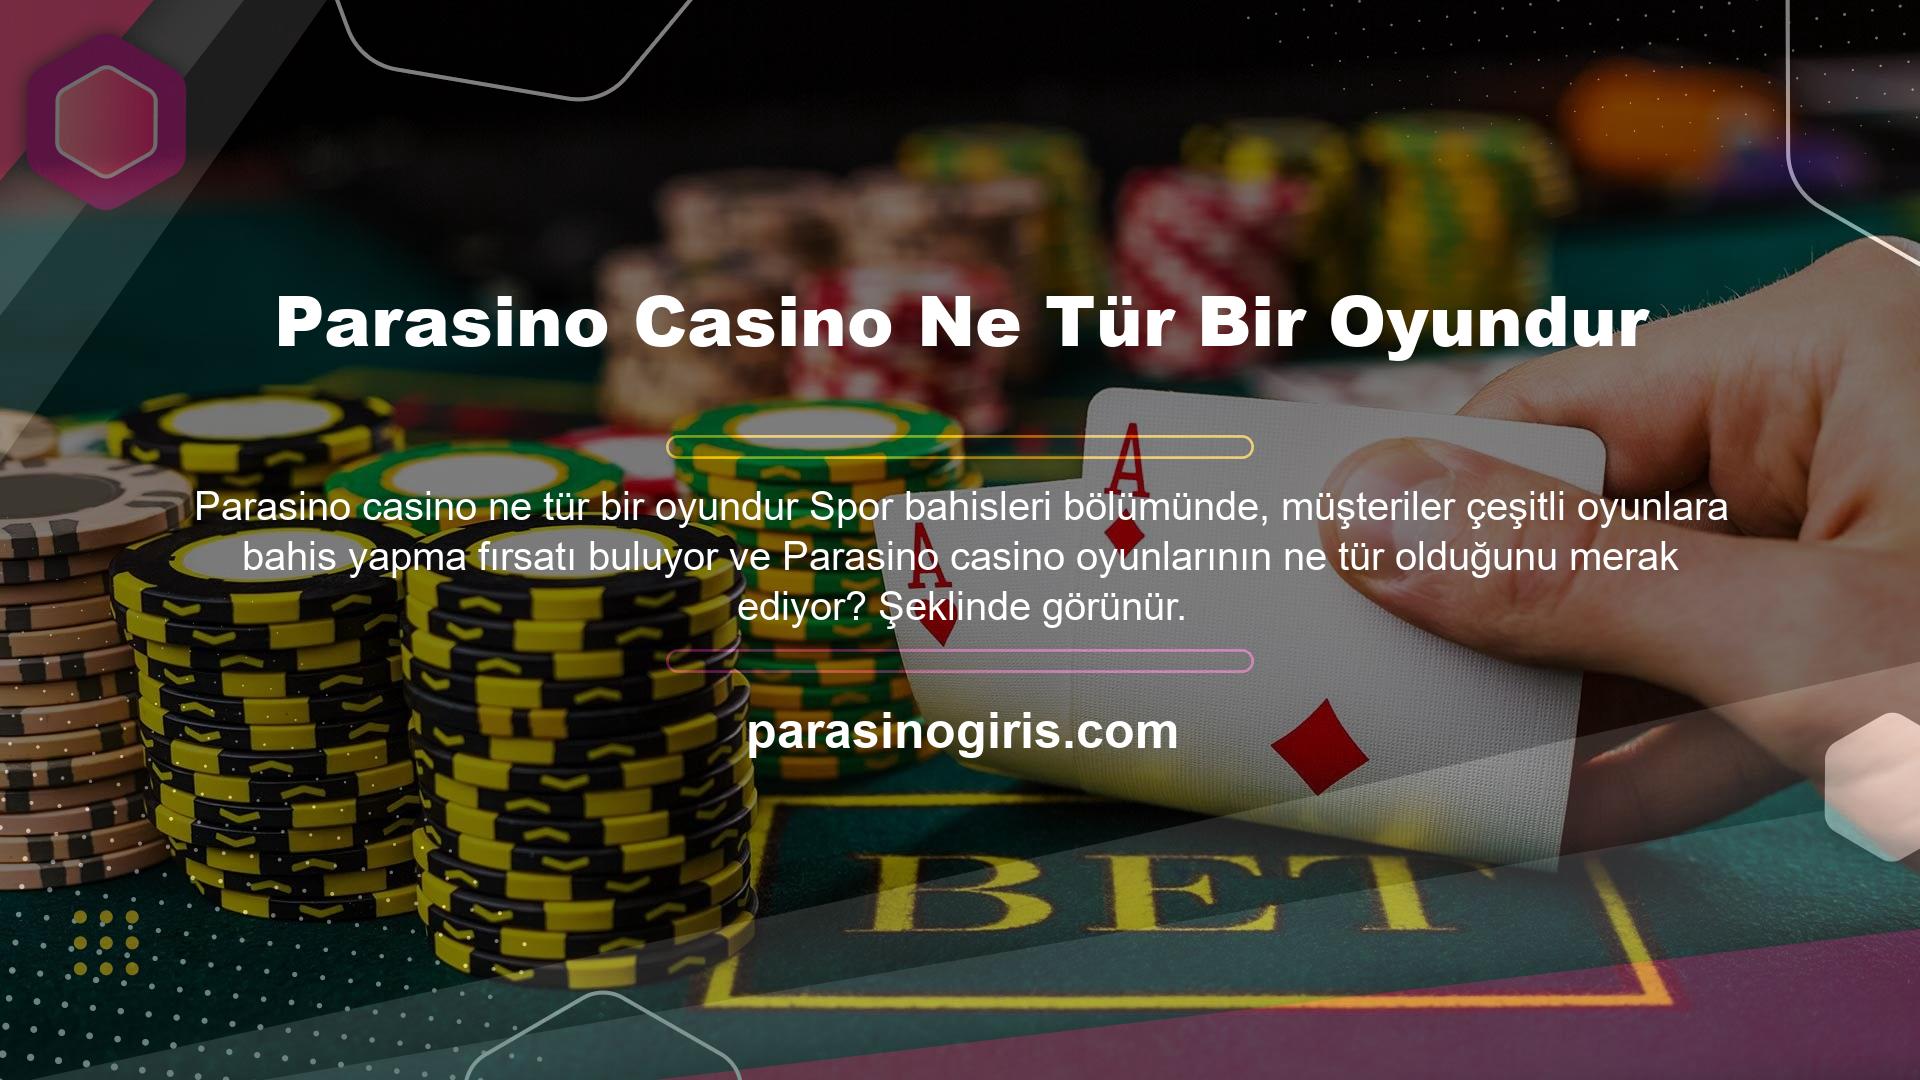 Casino oyunlarının bu bölümünde Rulet, Bakara, Craps, Blackjack, Bingo, Rulet, Poker gibi çeşitli alt yapıların sunulduğu görülmektedir